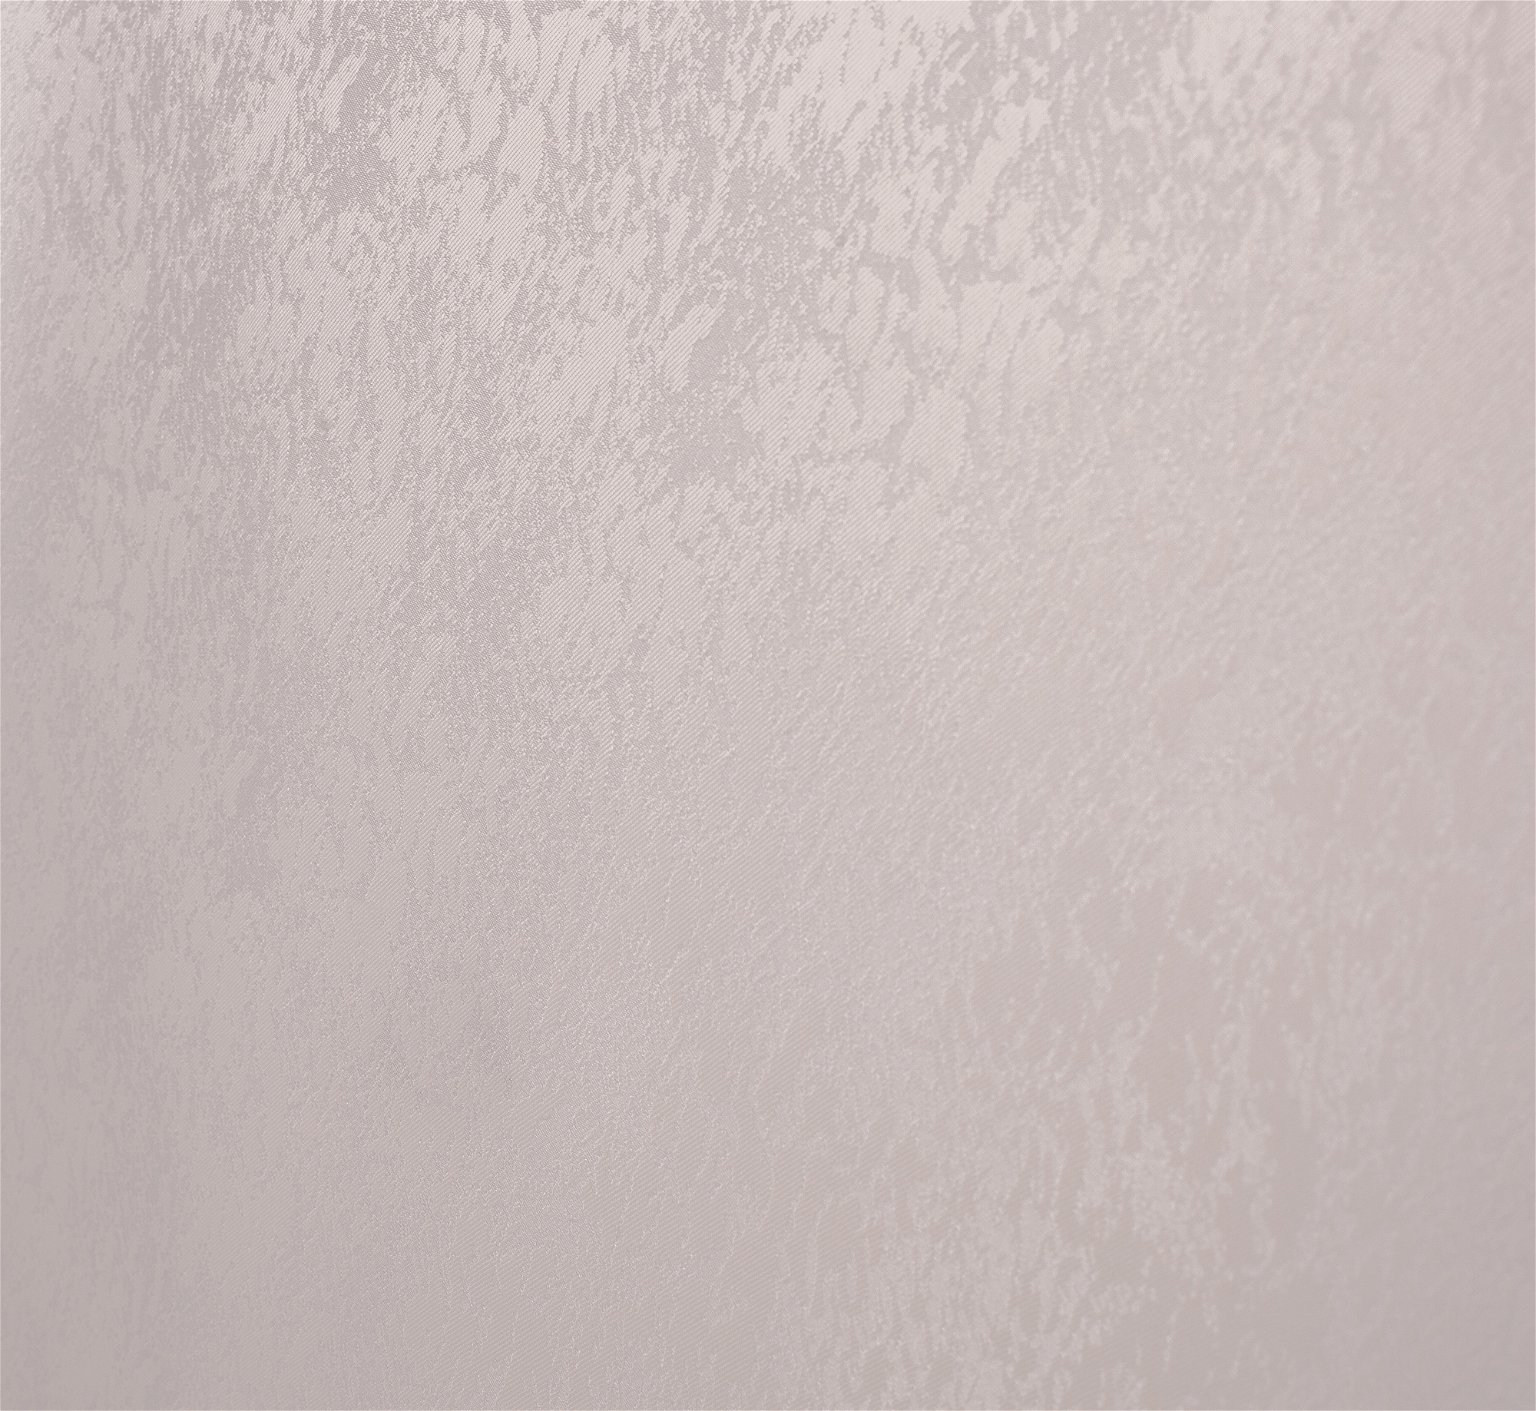 Klasikinė ritininė užuolaida LONDON, kreminės sp., 160 x 170 cm, 100 % poliesteris - 2